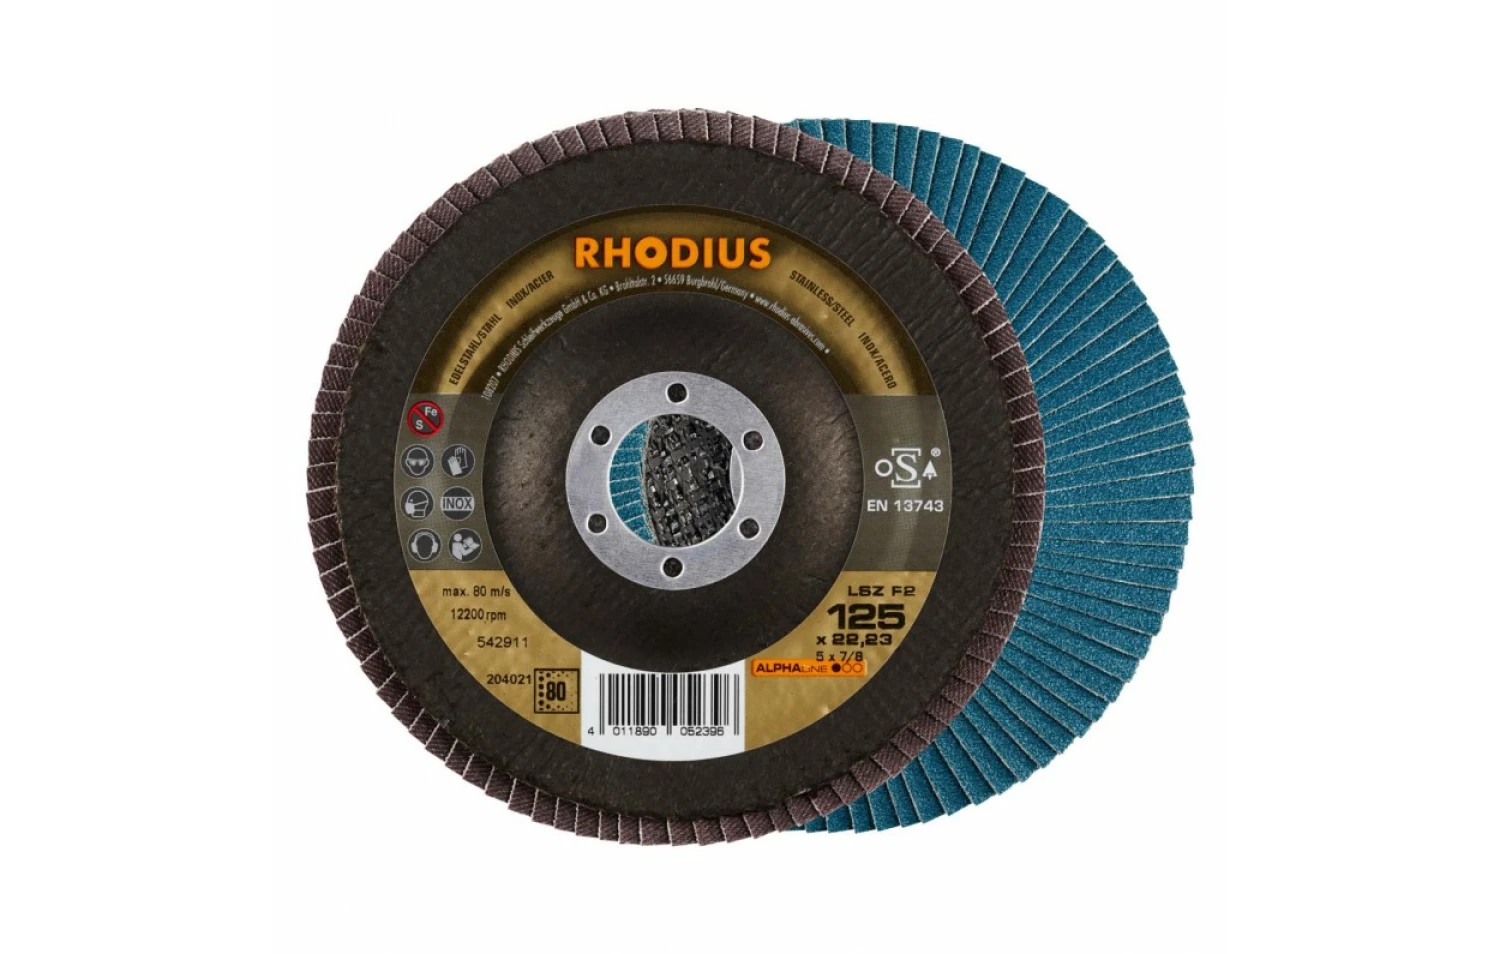 Rhodius 204021-10 Disques à lamelles-image